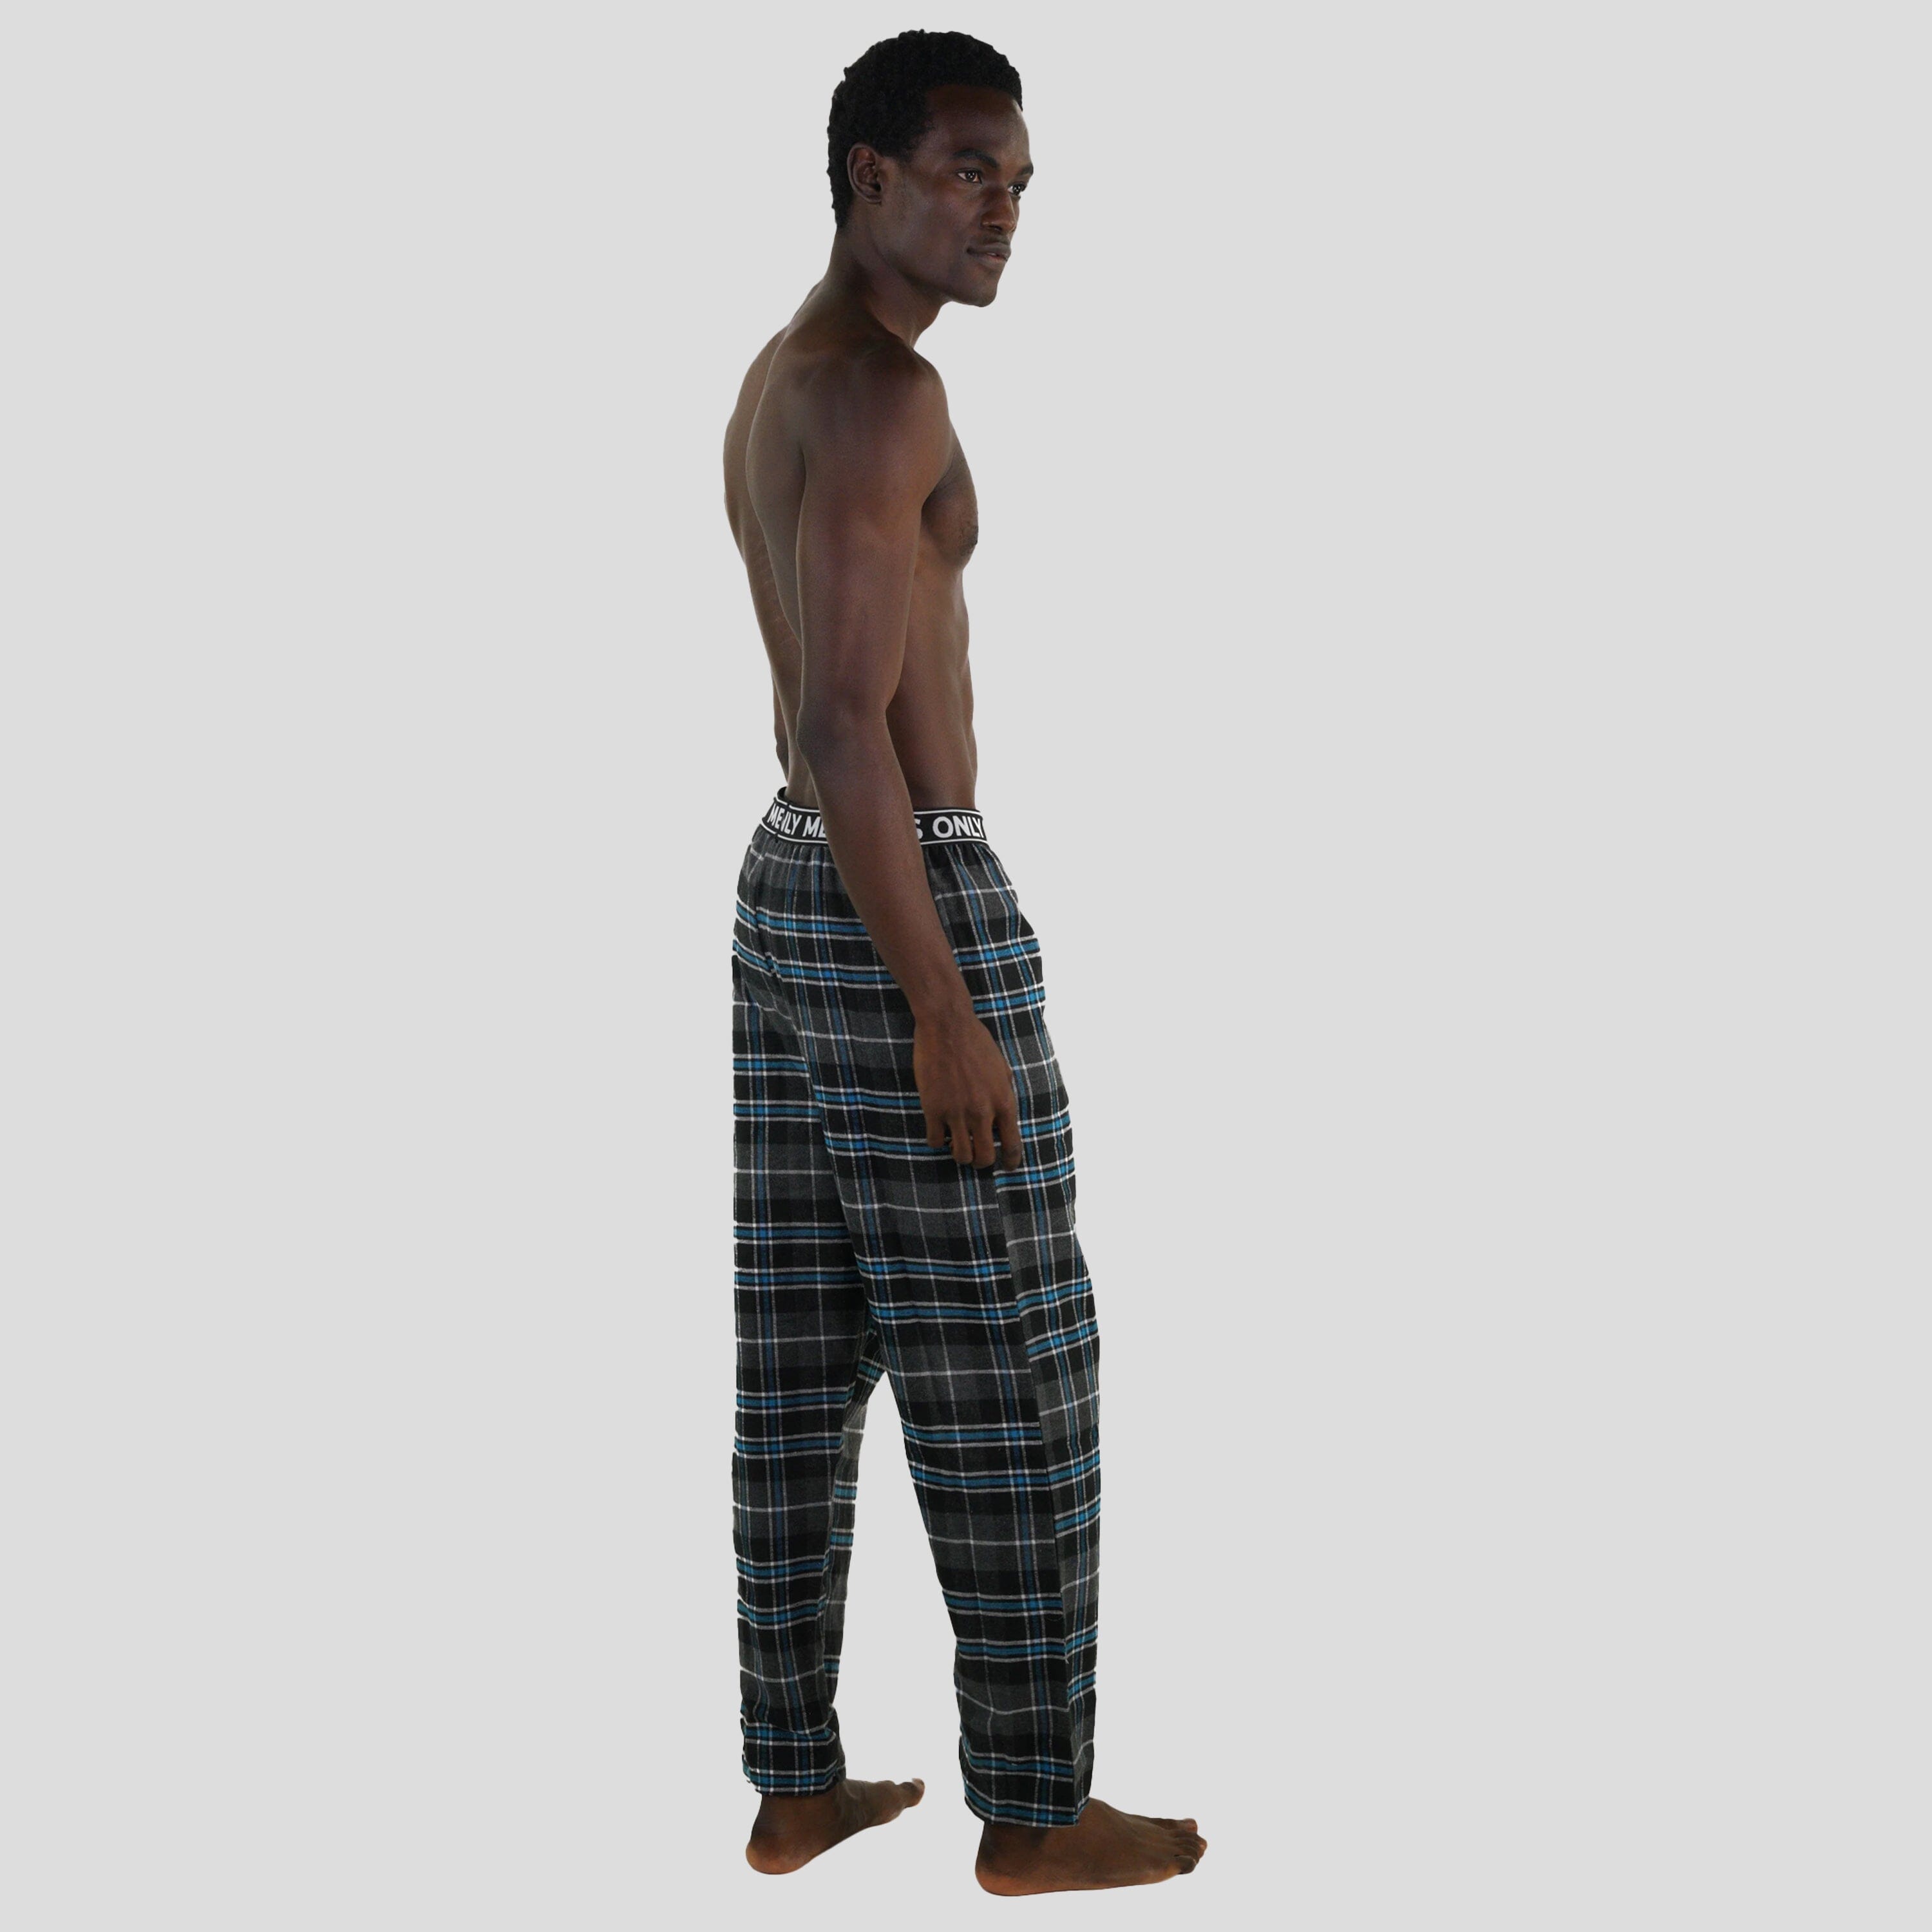 Men's Flannel Sleep Pants Logo Elastic - Teal Sleepwear Pants Members Only 